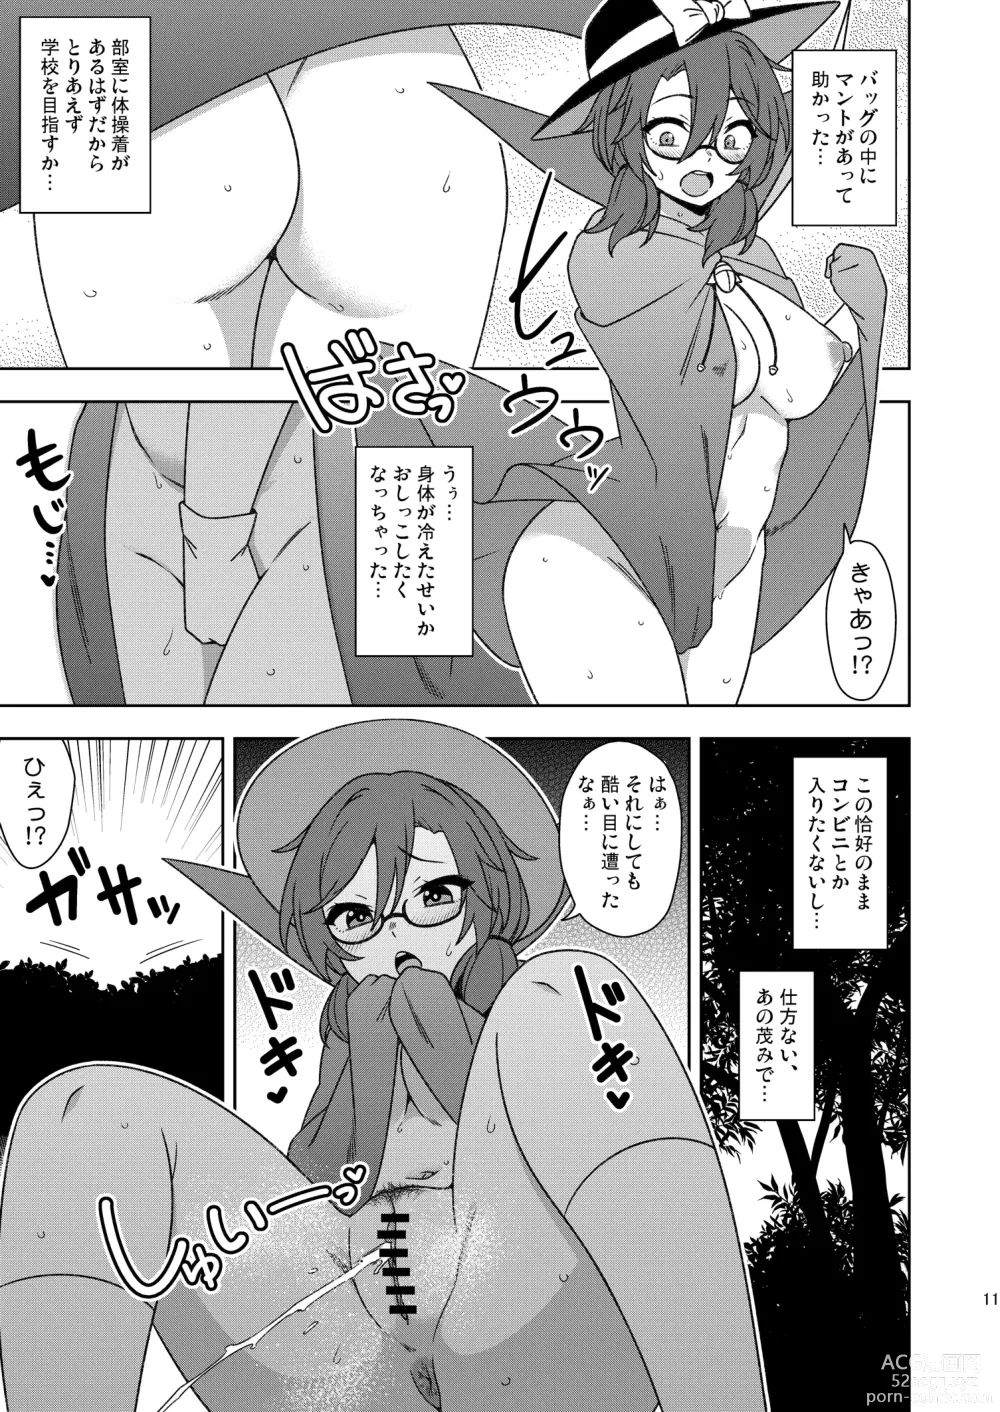 Page 10 of doujinshi Korewa kitto yumedakara!